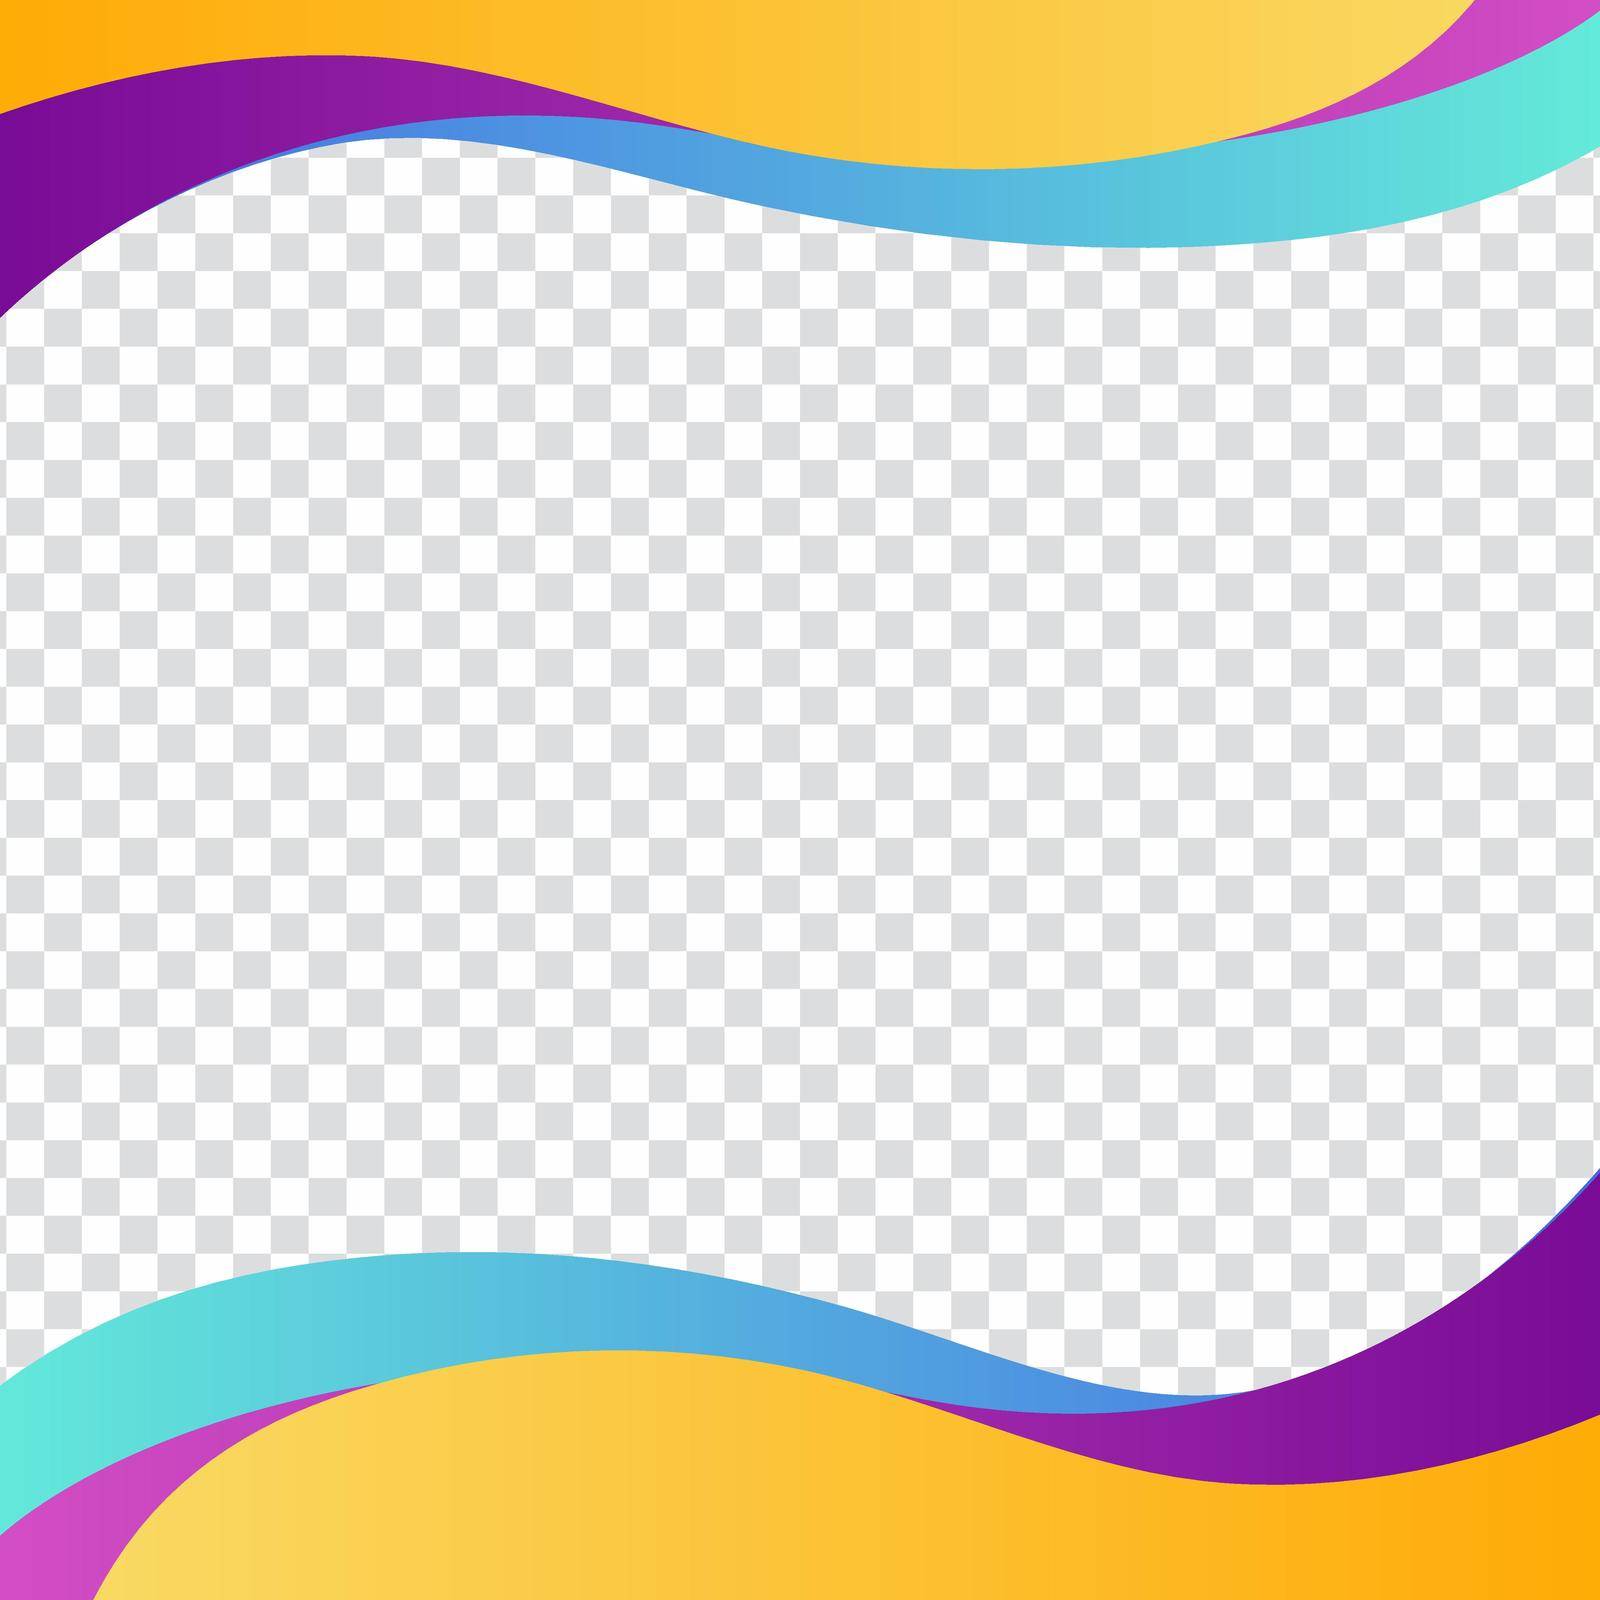 Square banner template design. Colorful curve social media frame for banner or brochure flyer.